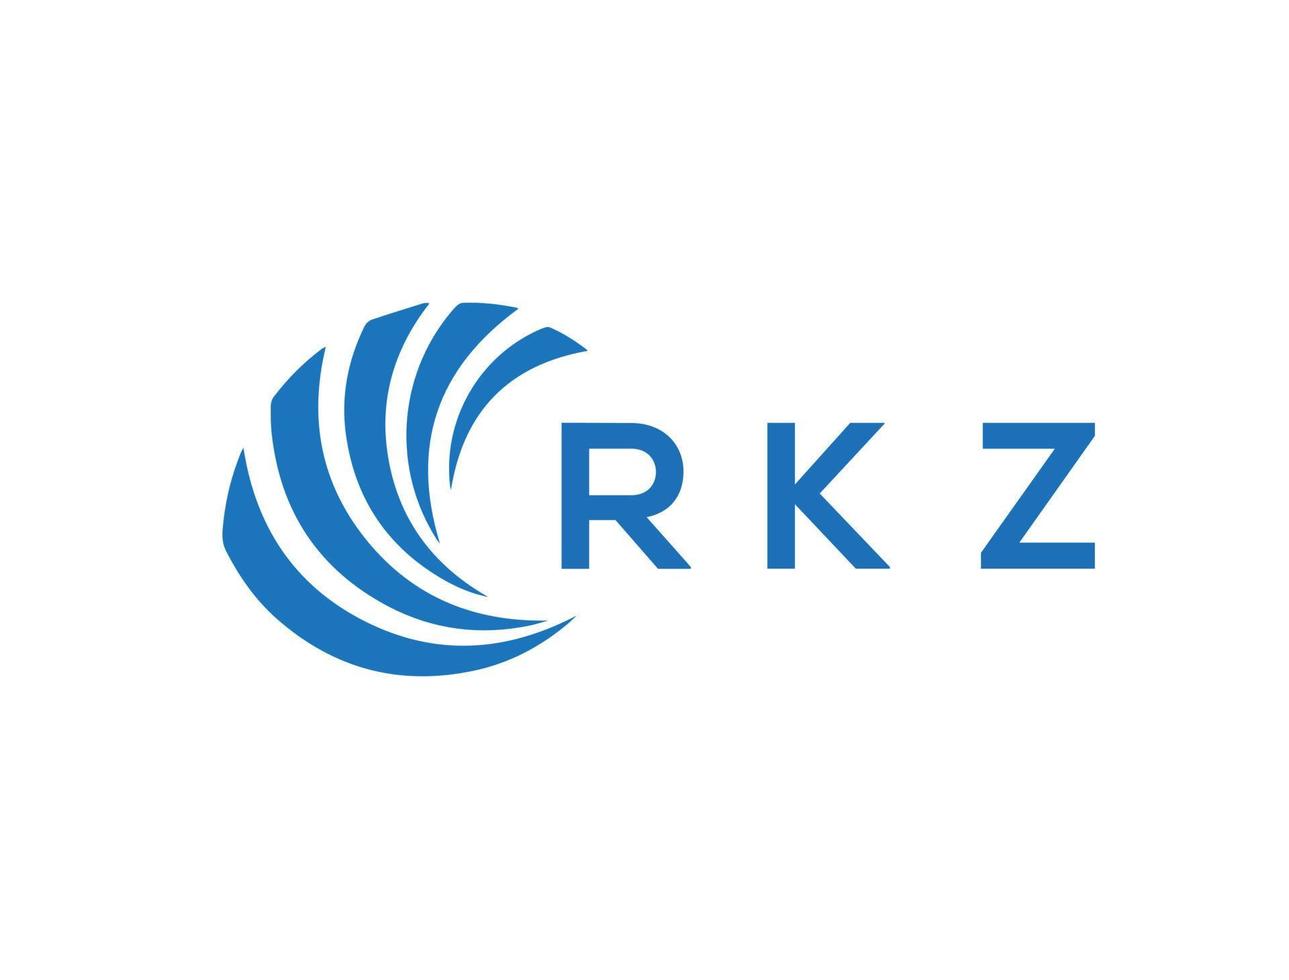 RKZ letter logo design on white background. RKZ creative circle letter logo concept. RKZ letter design. vector